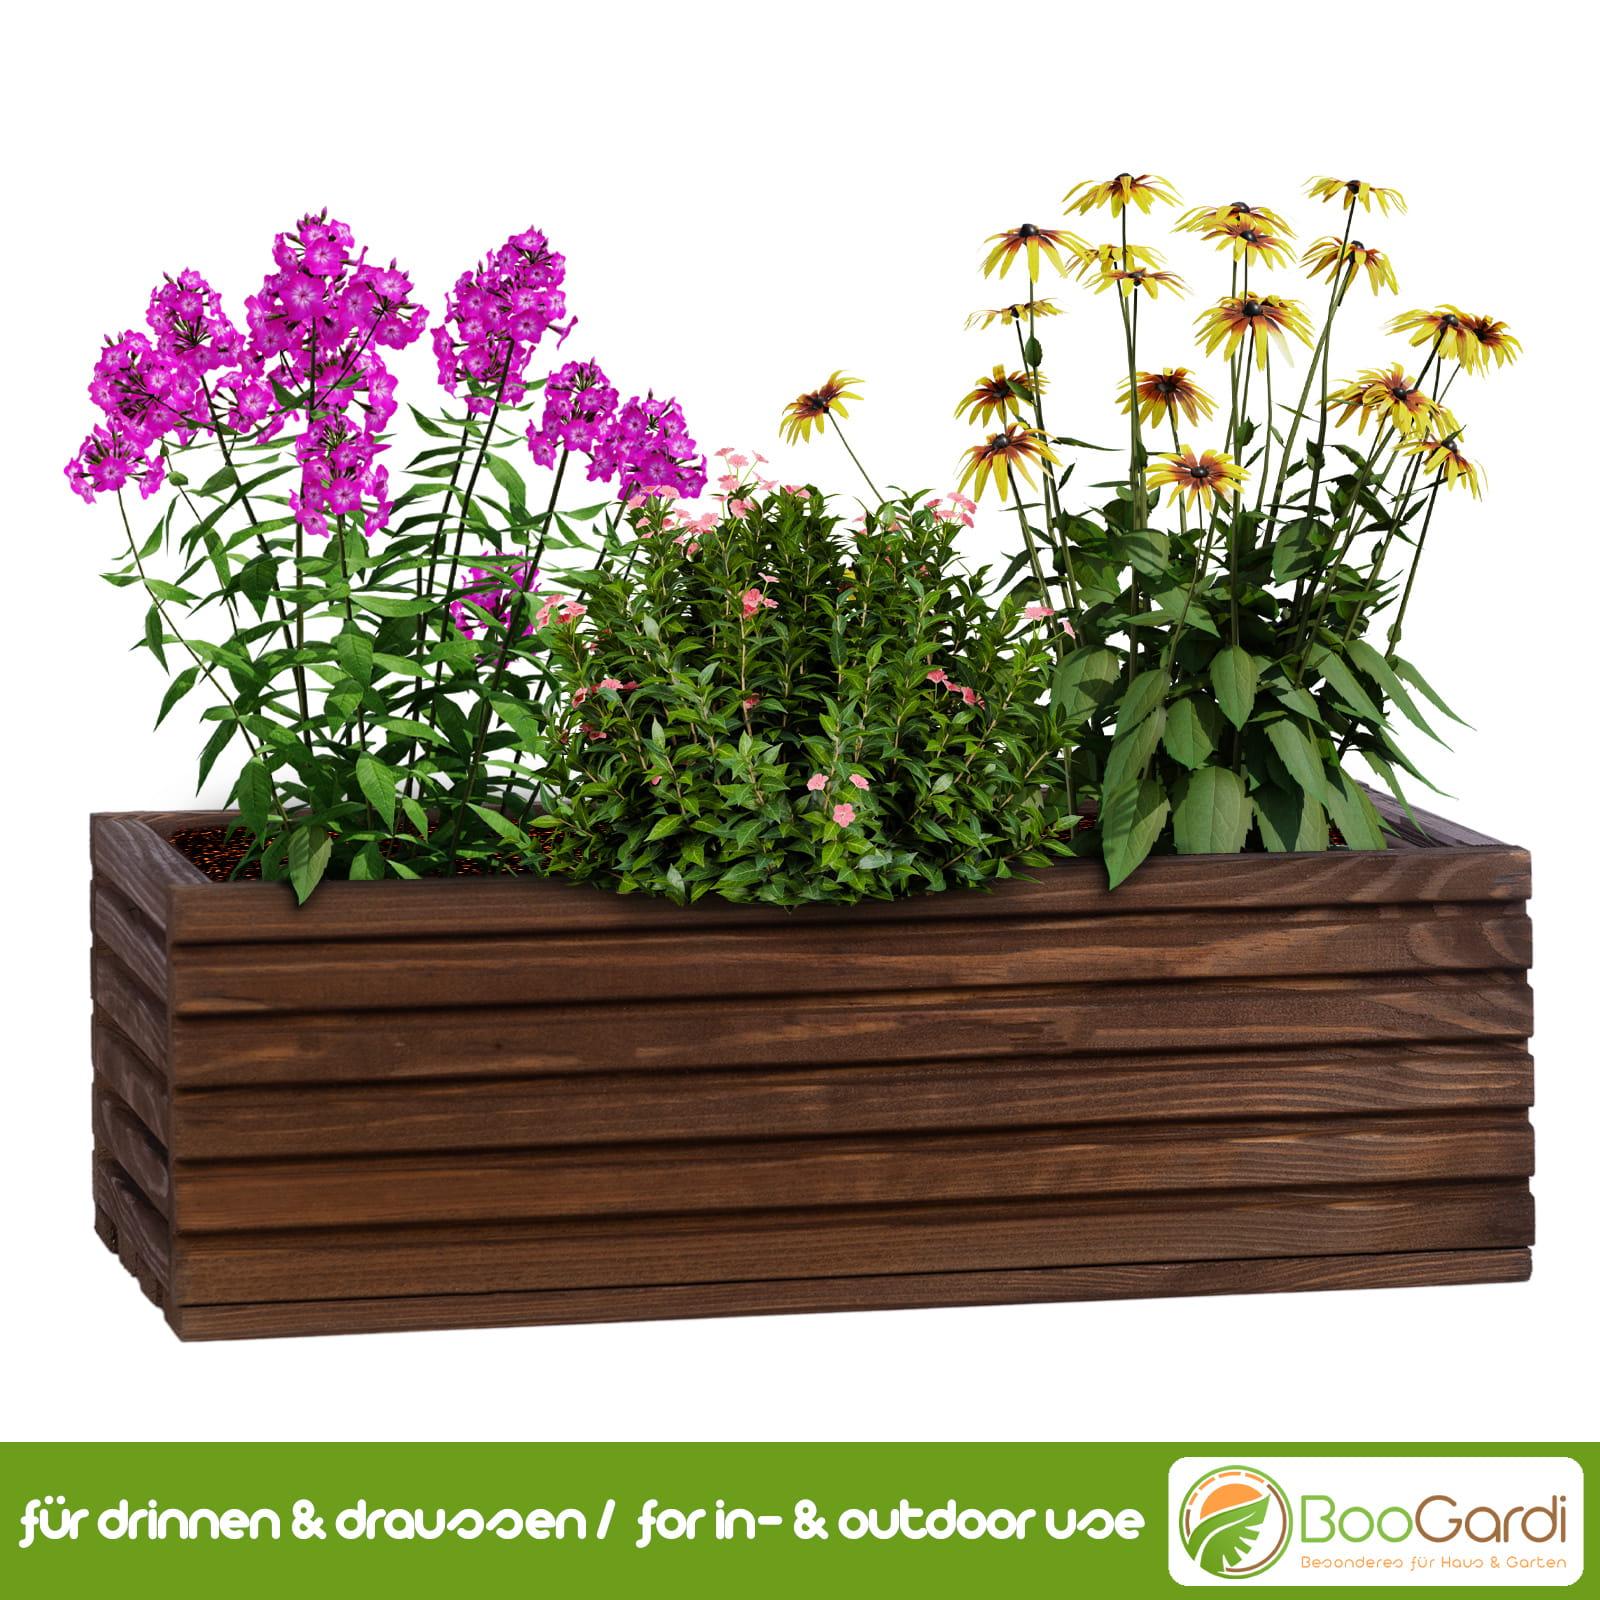 BooGardi & Garten Kunststoffeinsatz mit Blumenkasten | Haus -